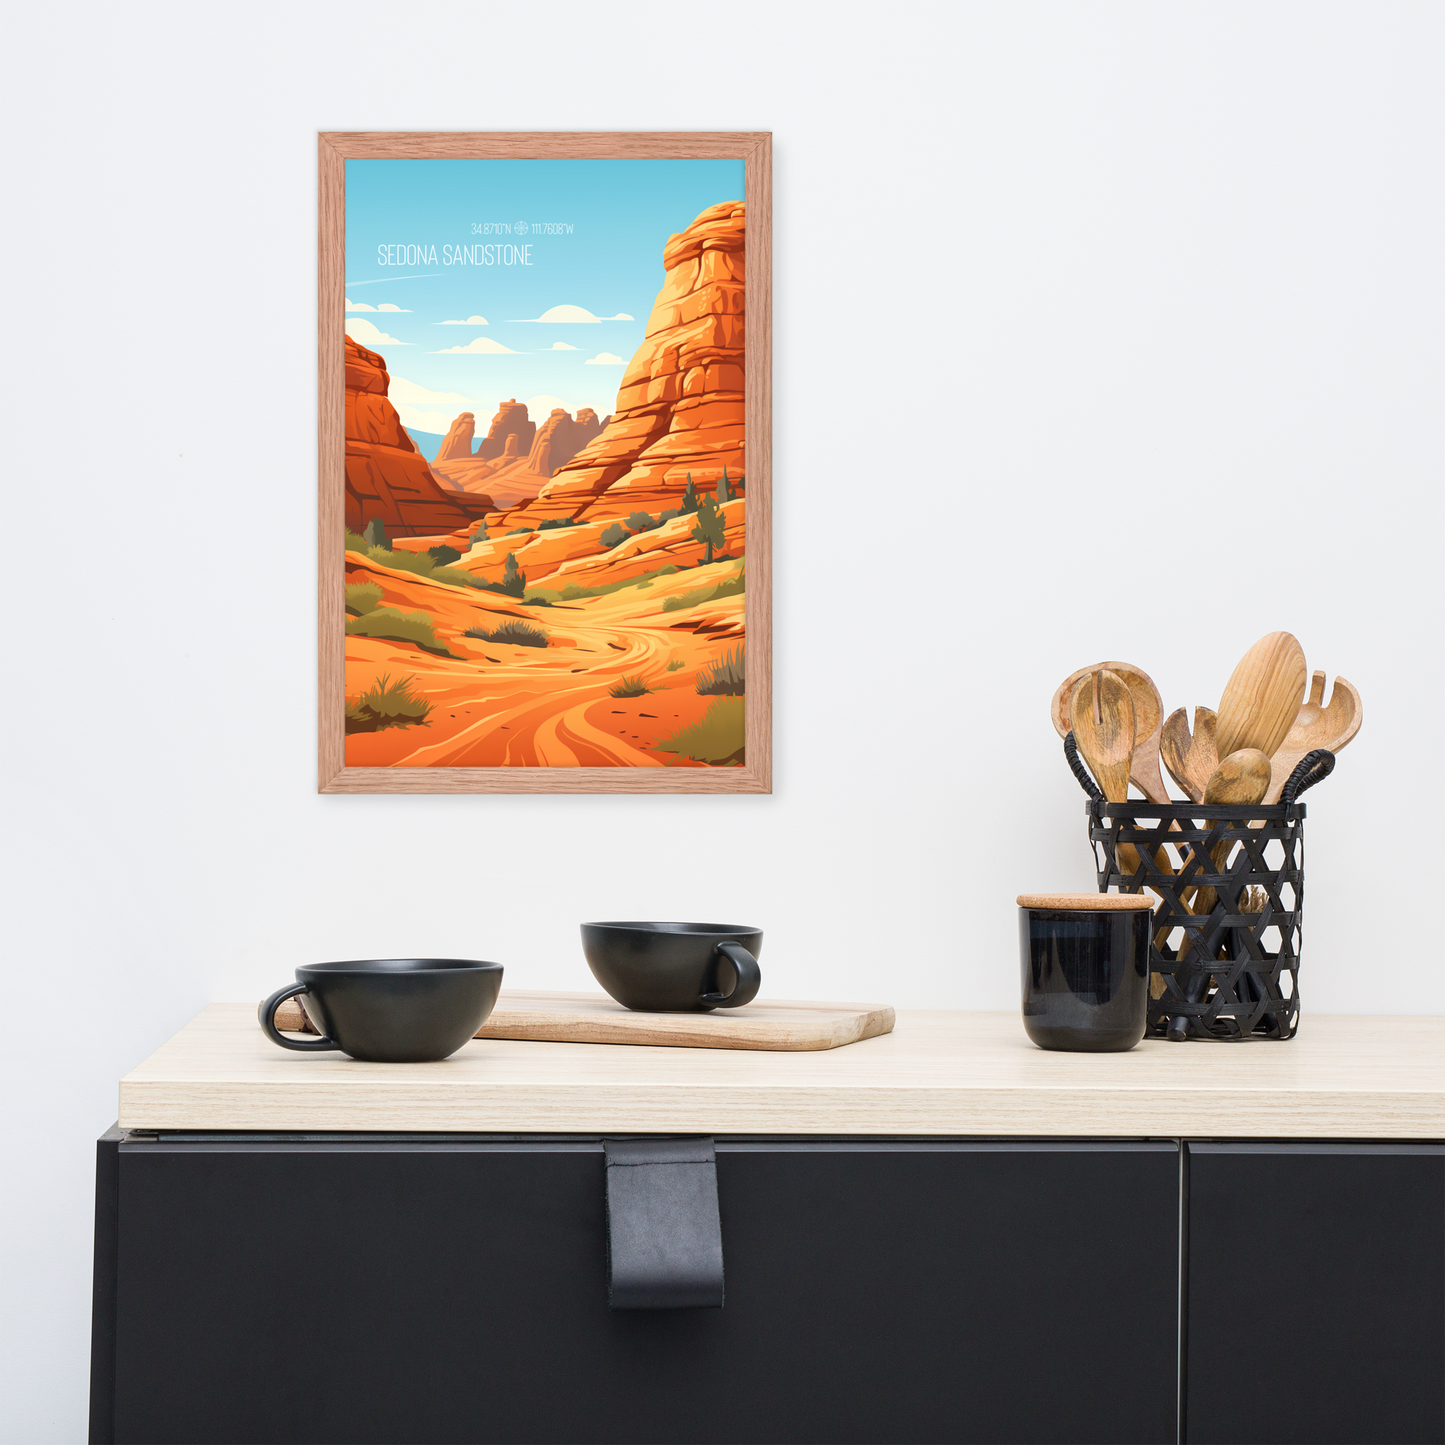 Arizona - Sedona Sandstone (Framed poster)